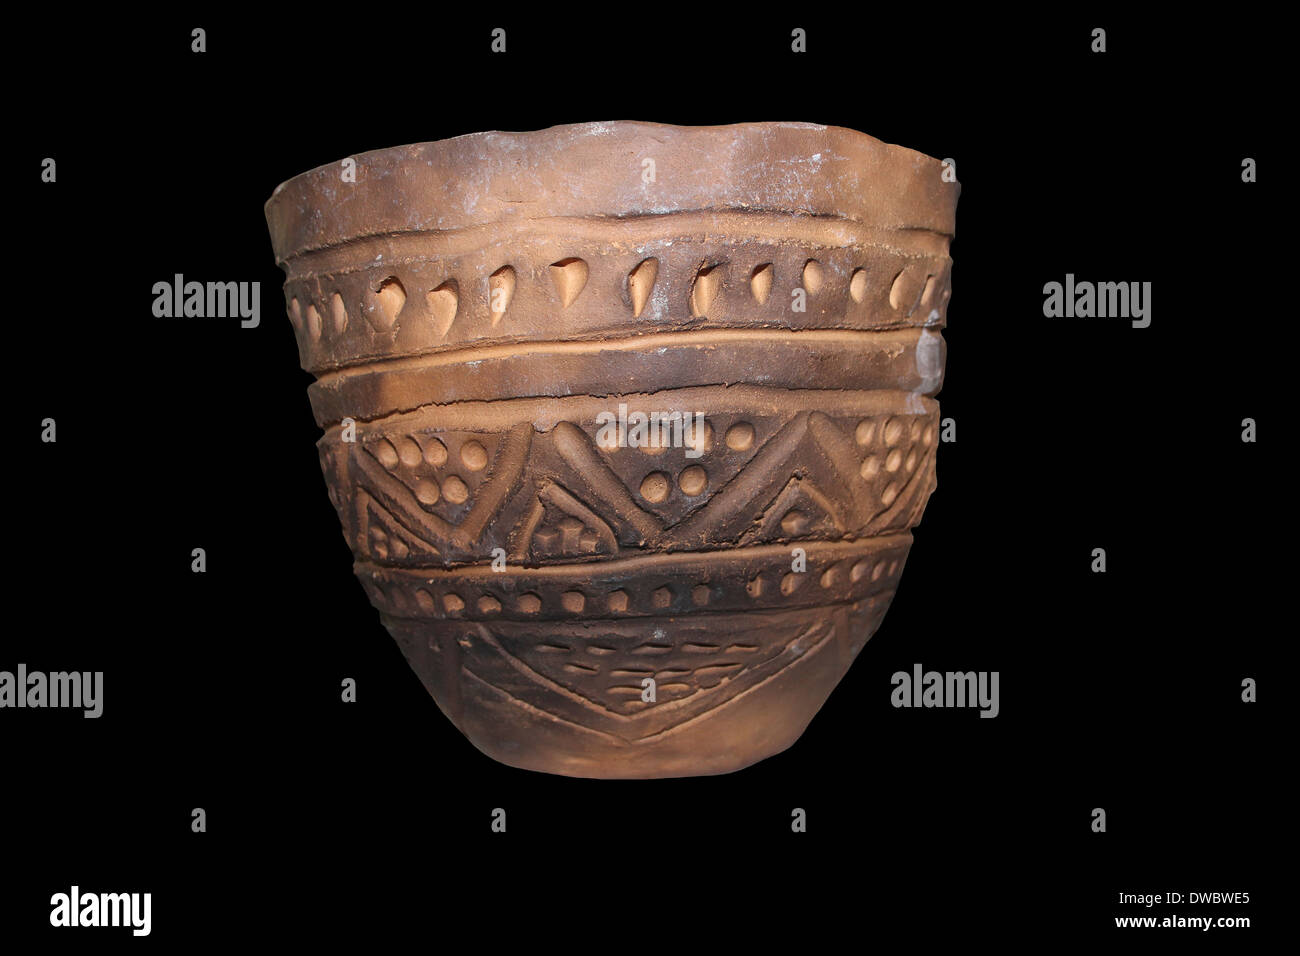 Keramik-Re-Konstruktion des neolithischen Stil und Design In Großbritannien gefunden Stockfoto